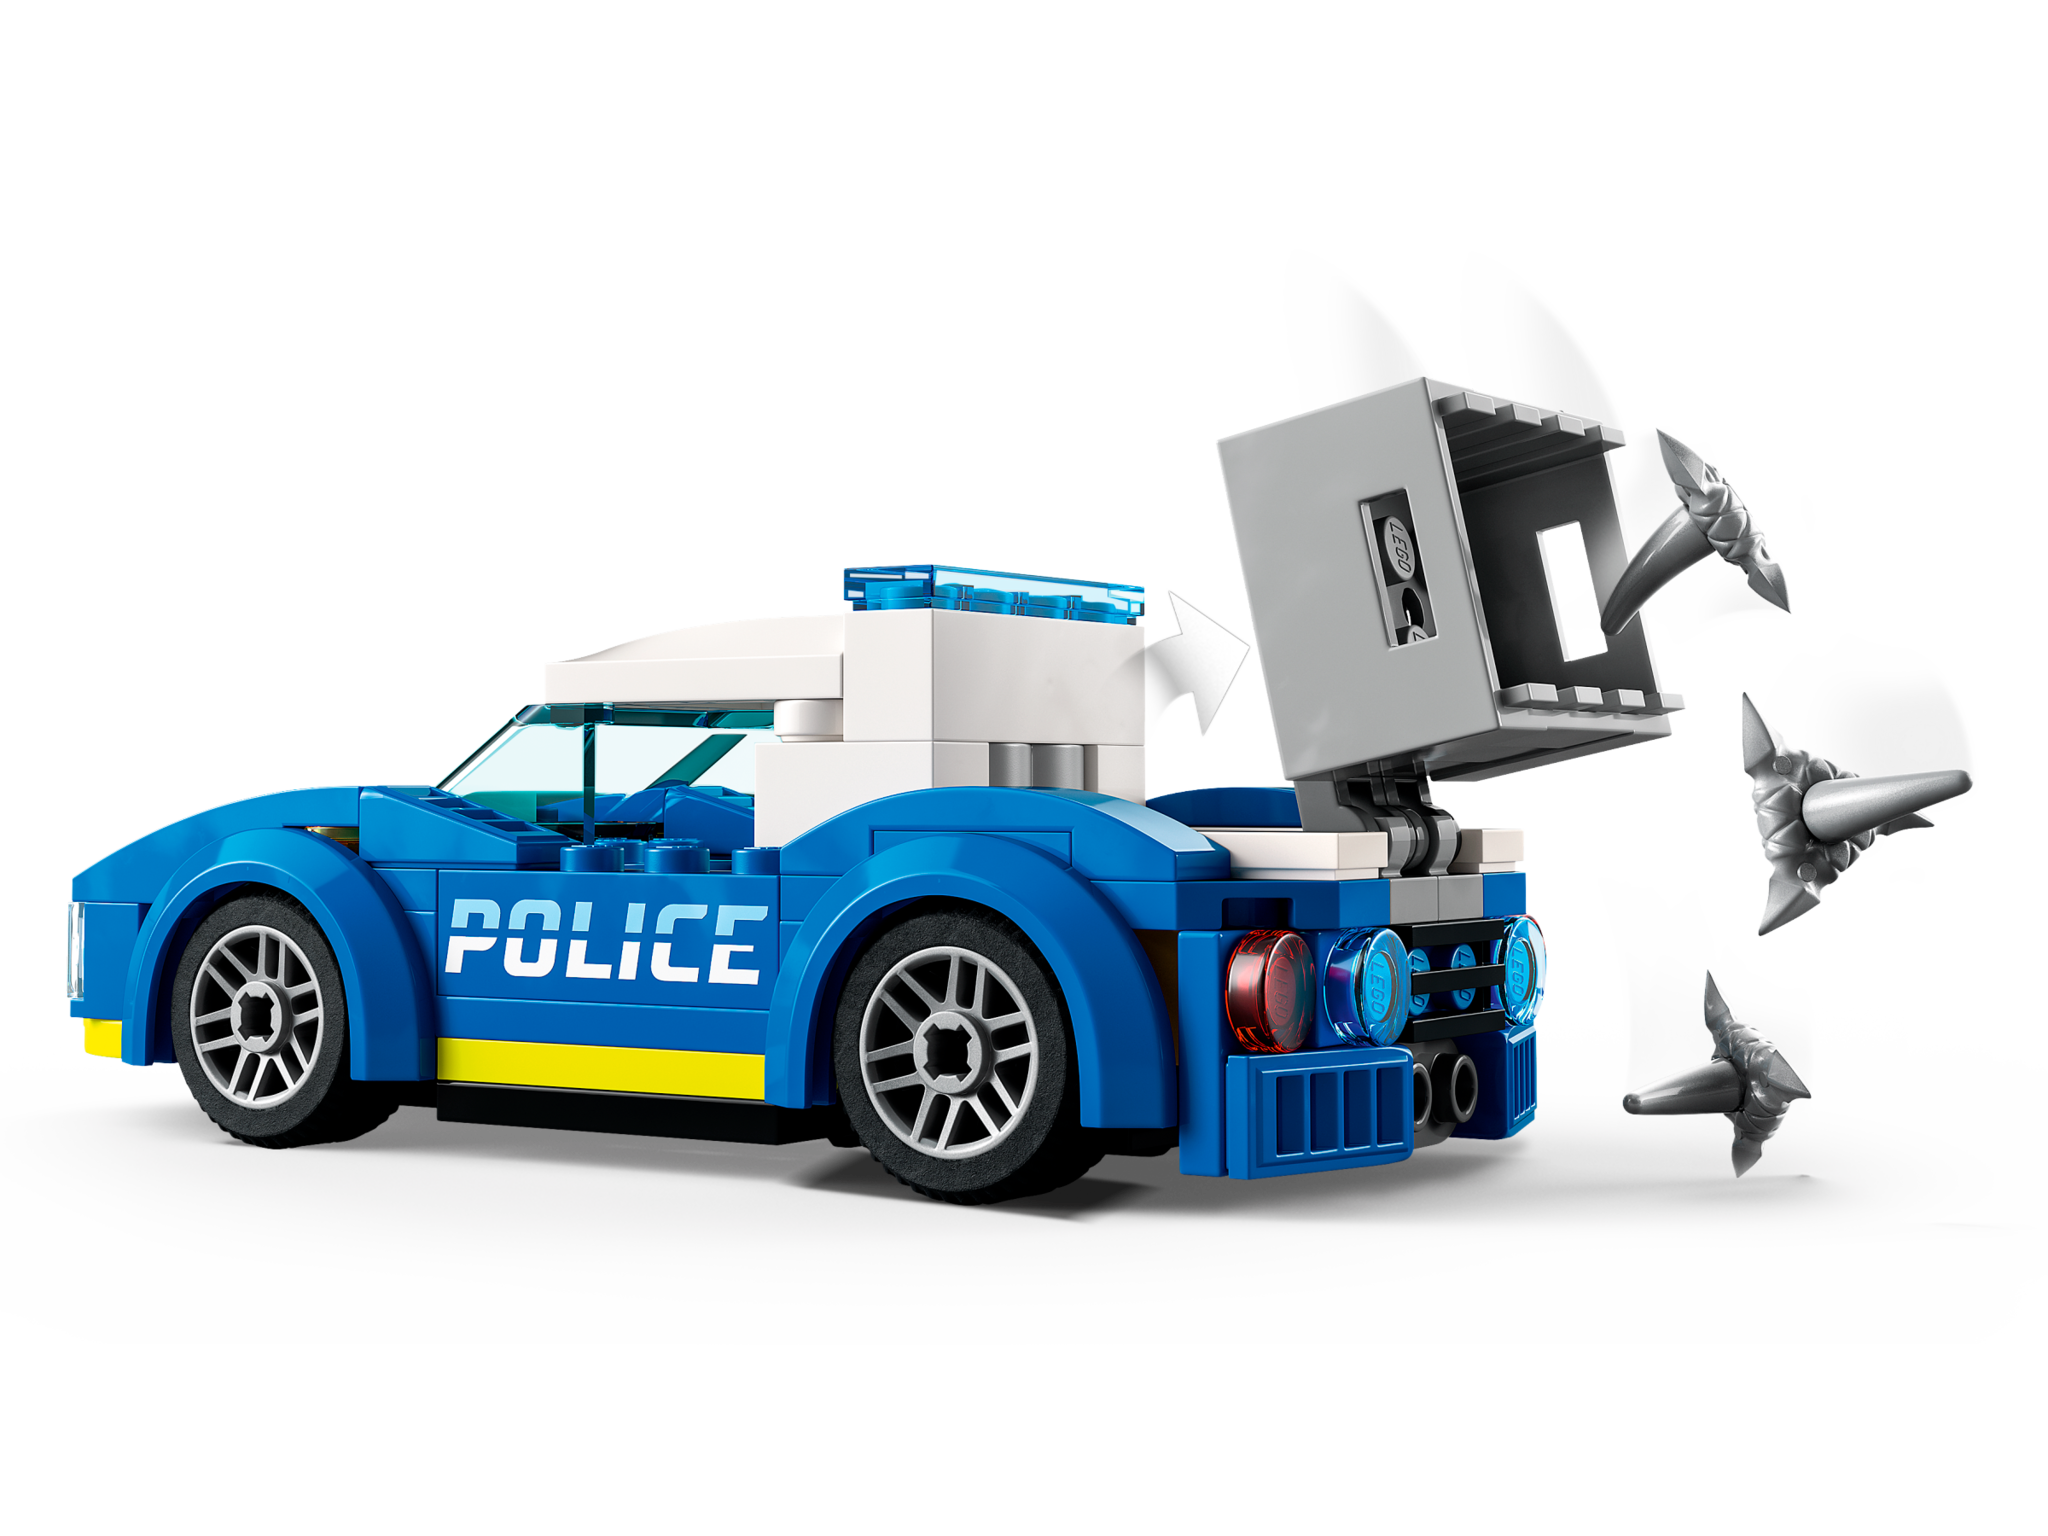 Lego Lego 60314 City - La poursuite policière du camion de crème glacée